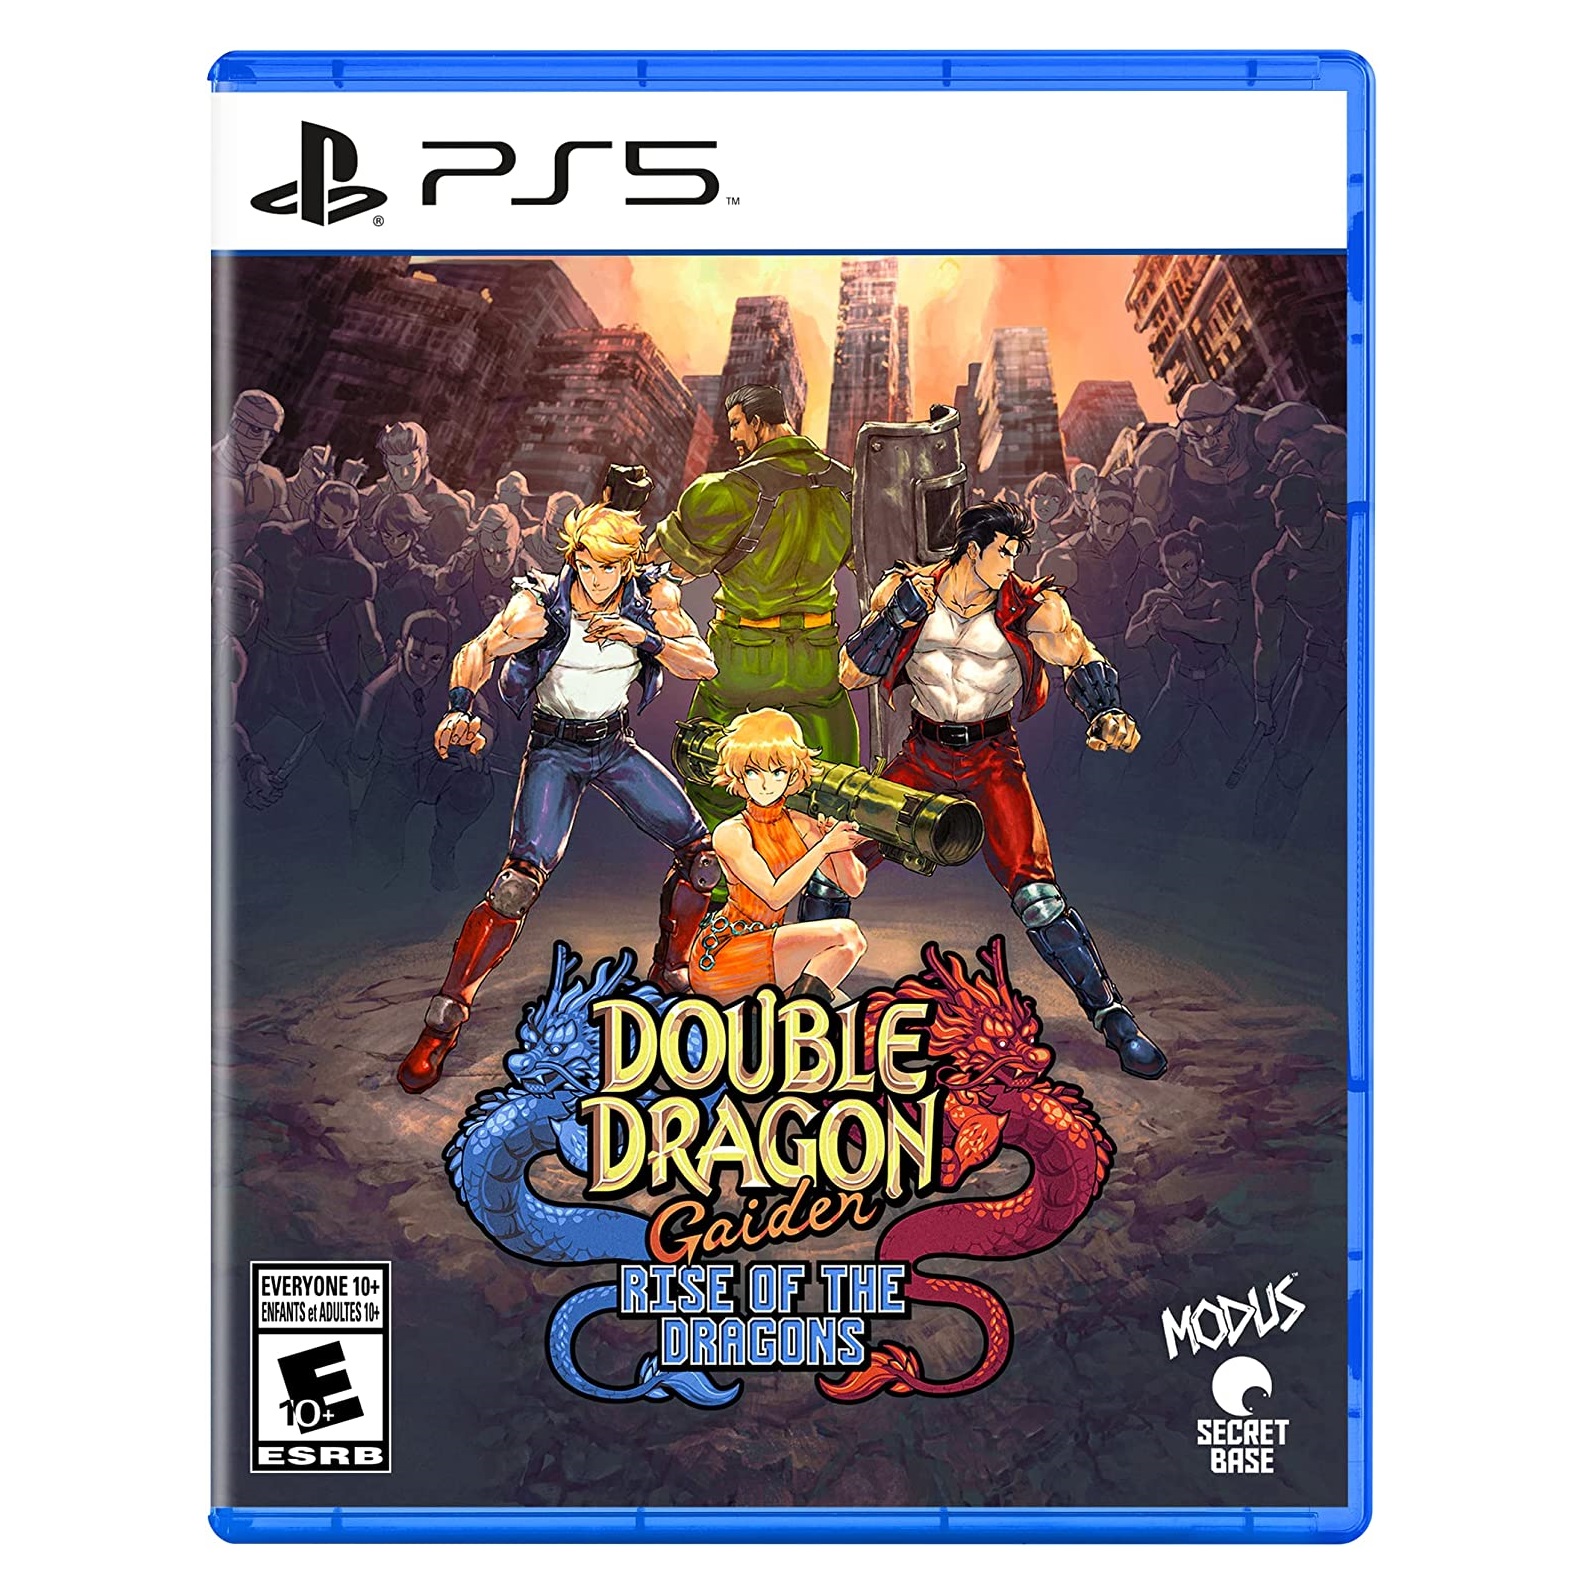 Double Dragon Gaiden: Rise of the Dragons vai estrear no dia 27 de